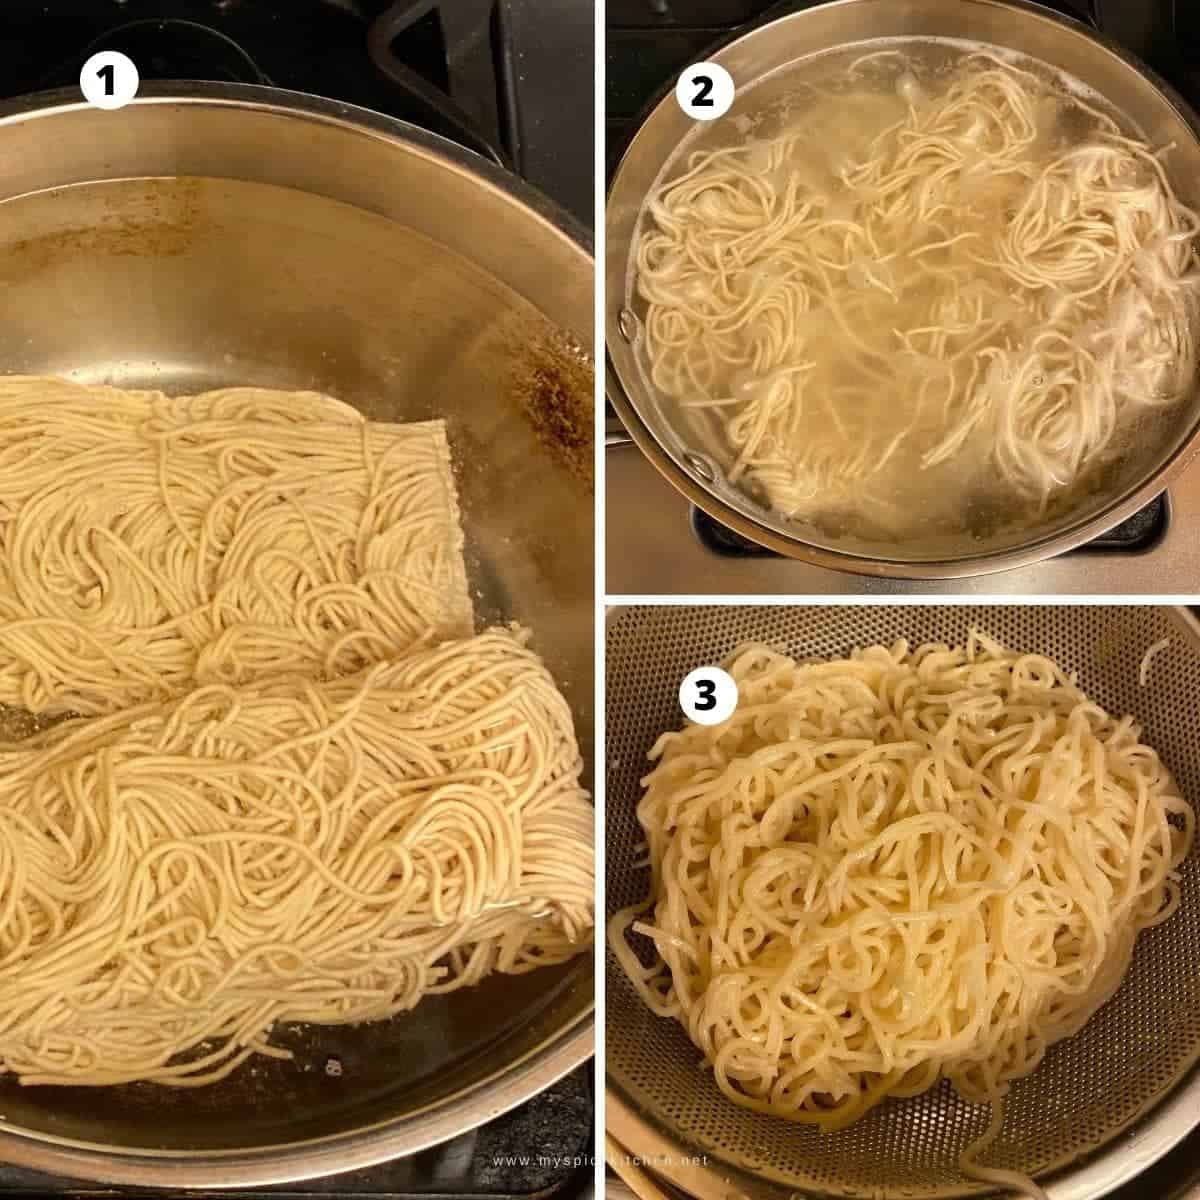 SBS preparation of noodles; noodles in boiling water, noodles cooking in boiling water and cooked noodles in a colander.